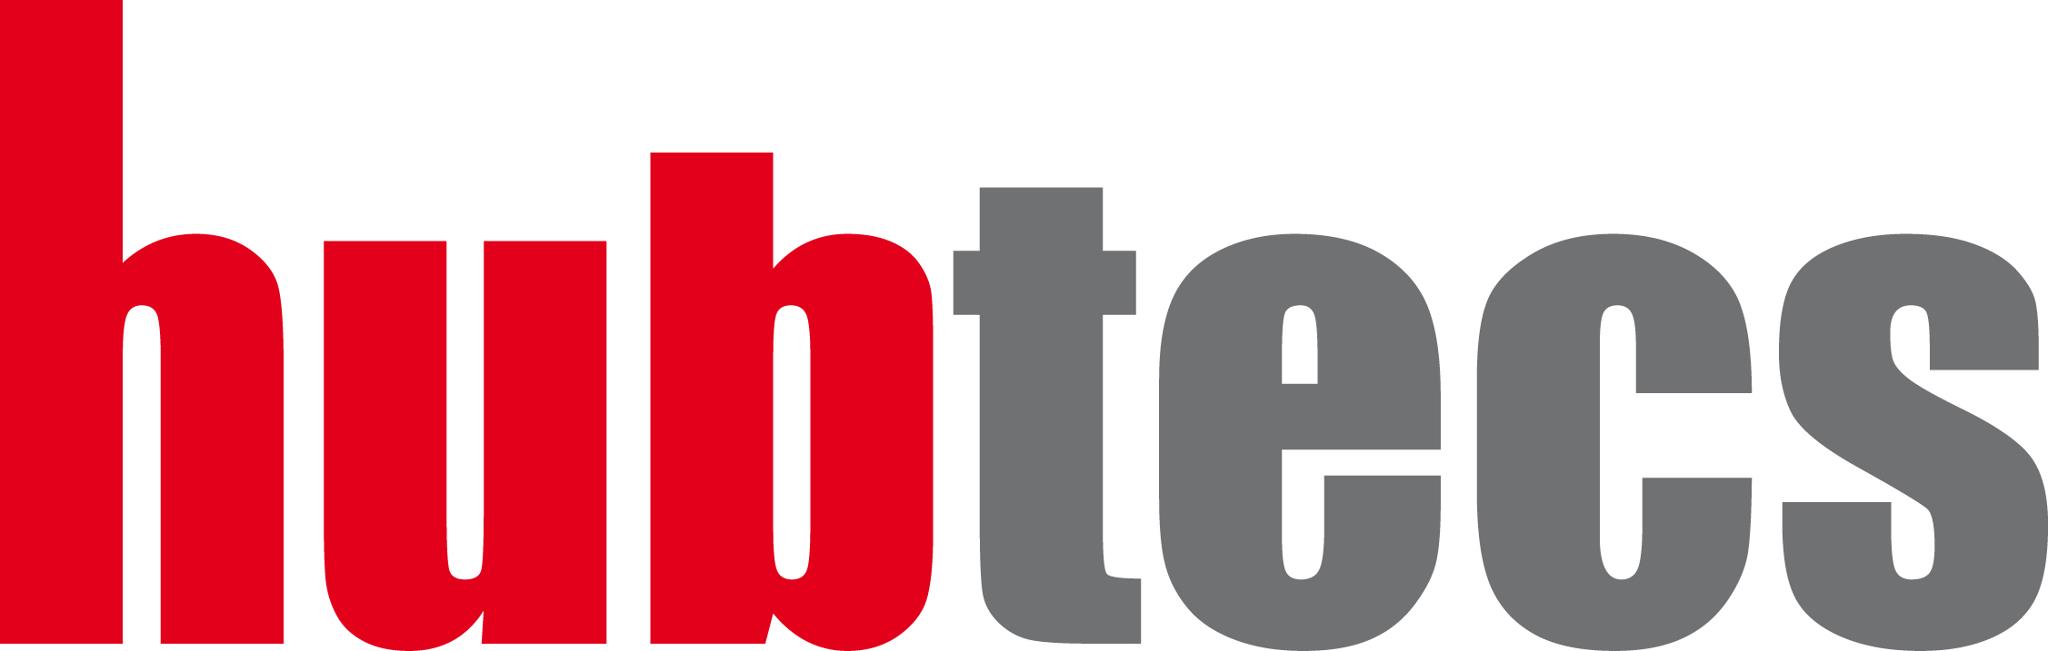 Logo Hubtecs